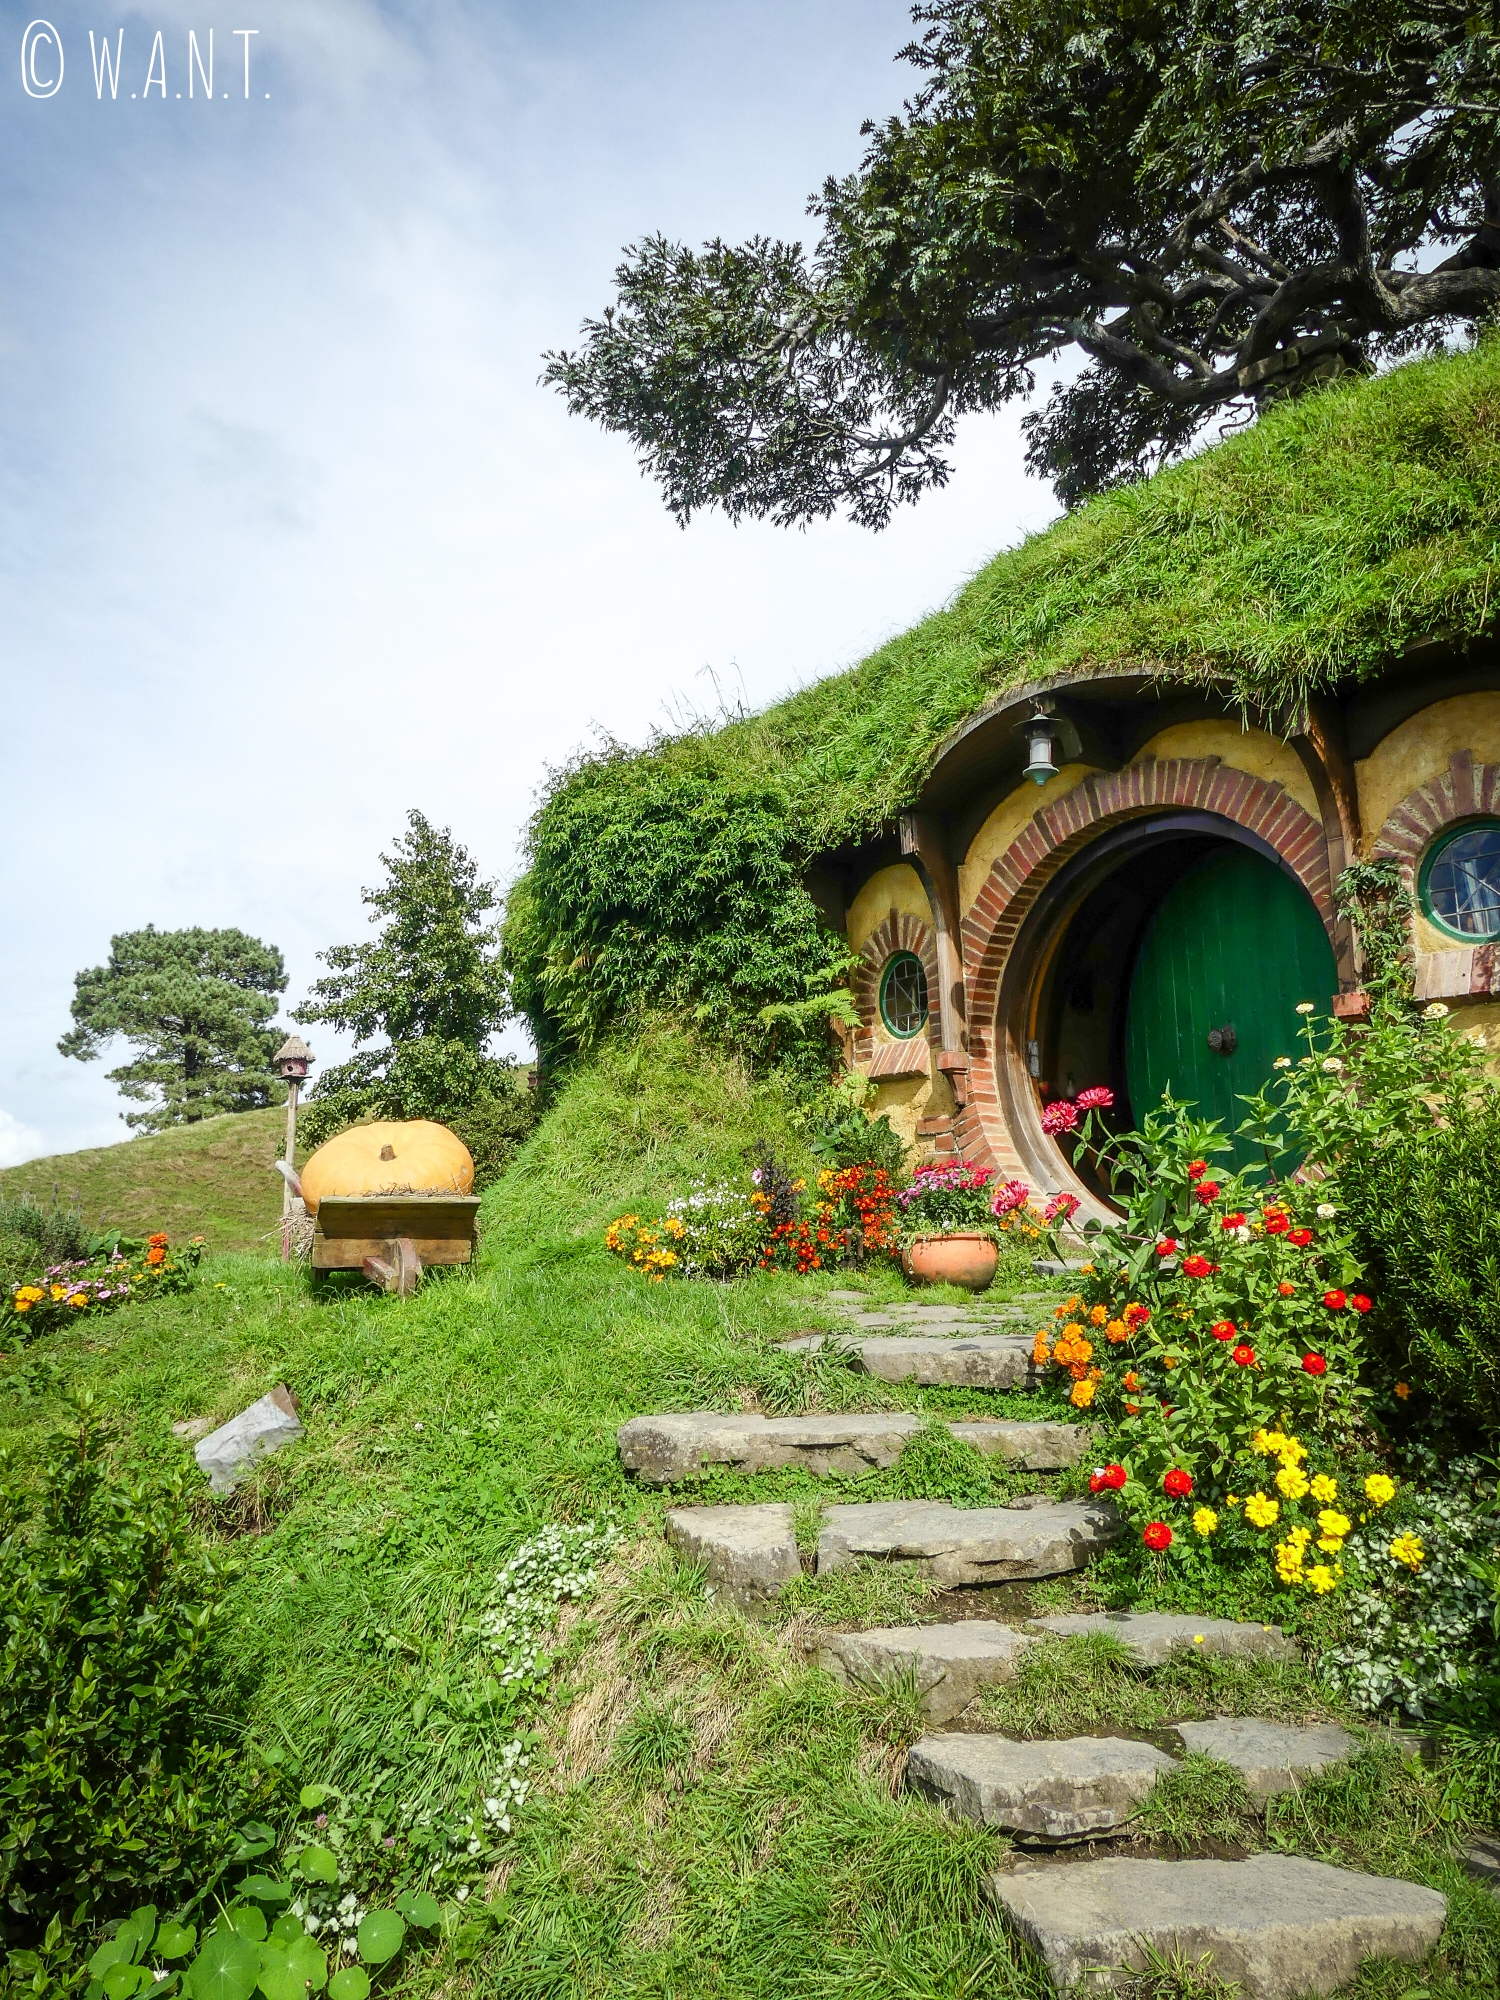 Maison de Bilbo le Hobbit sur le site de Hobbiton en Nouvelle-Zélande